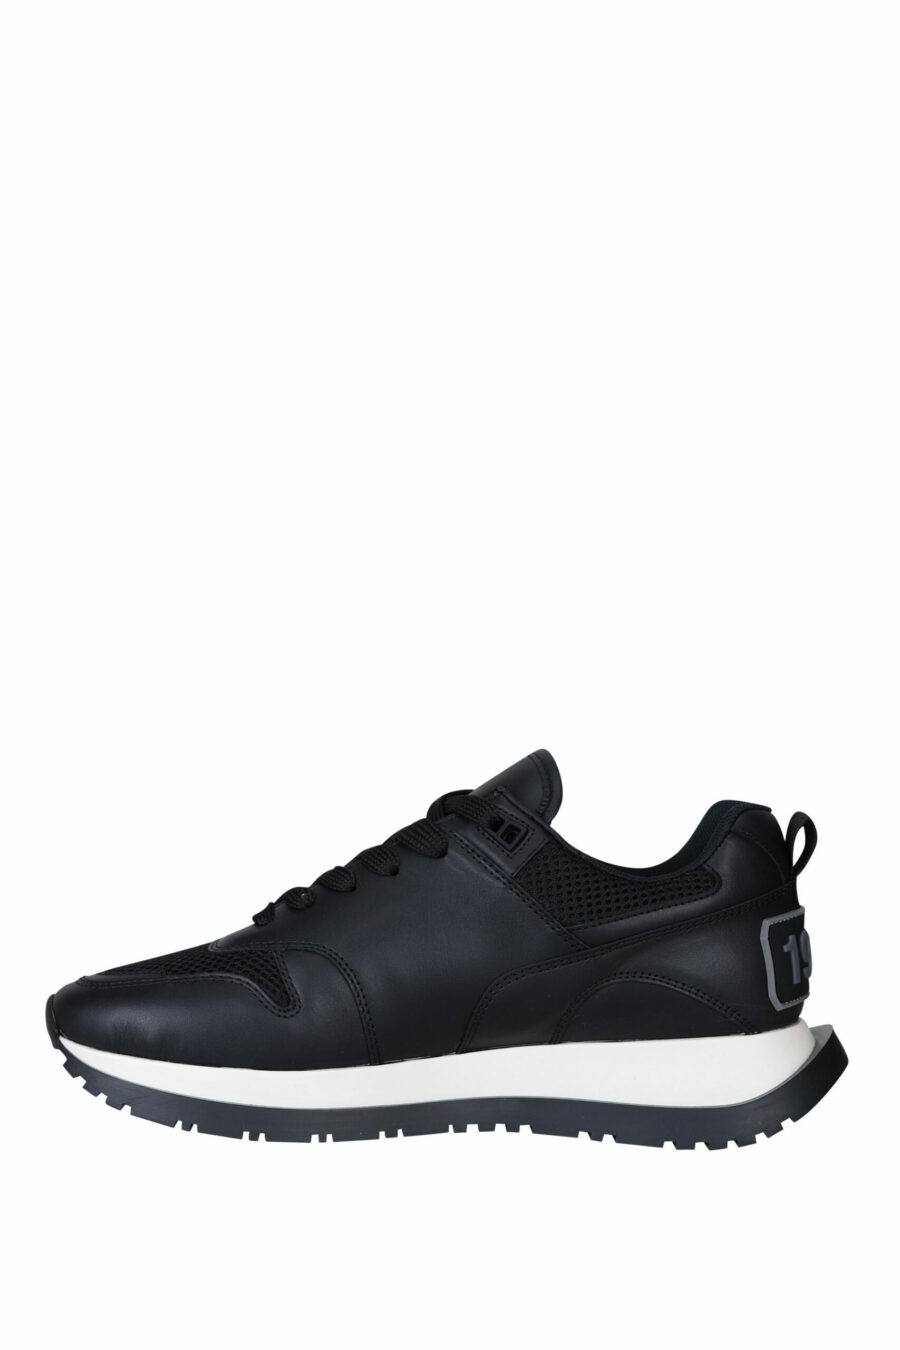 Dsquared2 - Zapatillas negras con logo en suela negro - BLS Fashion